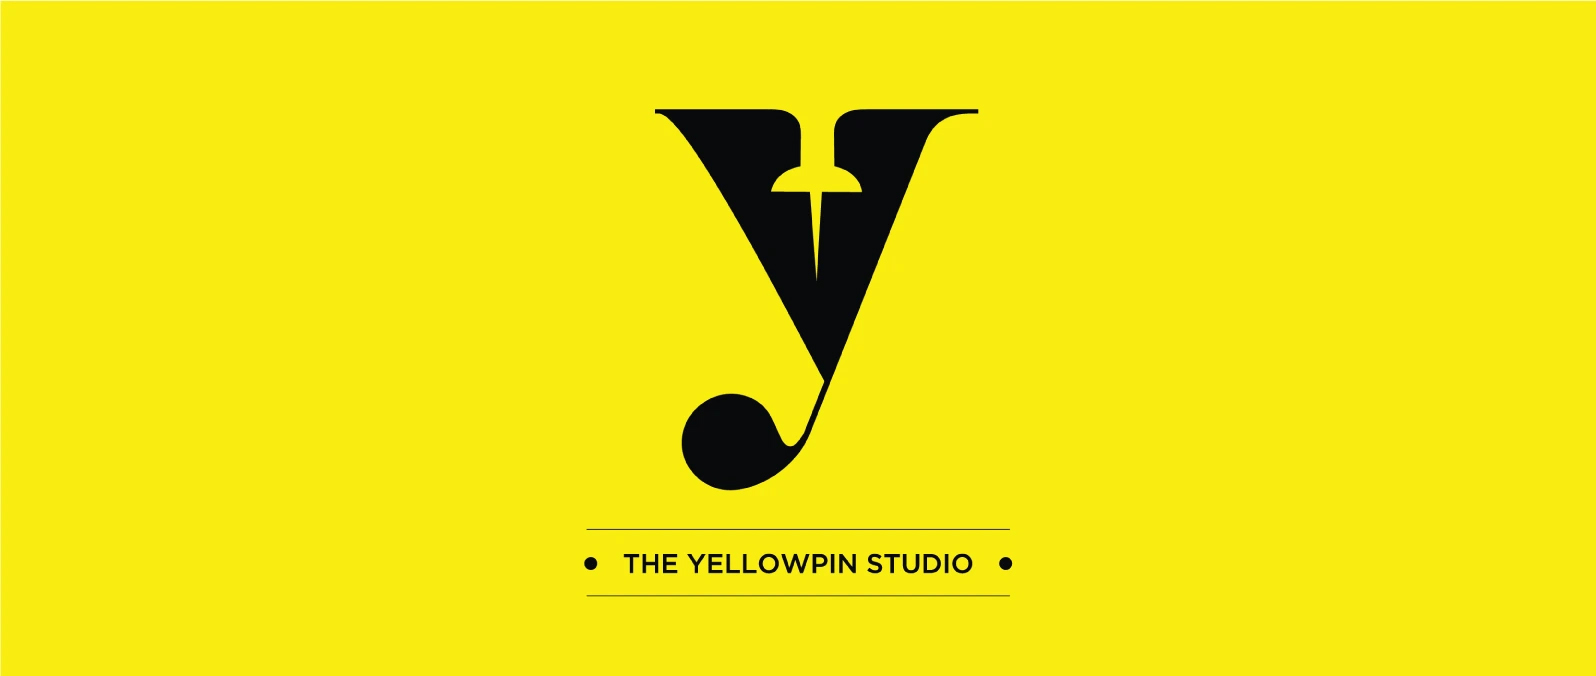 yellowpin studio banner